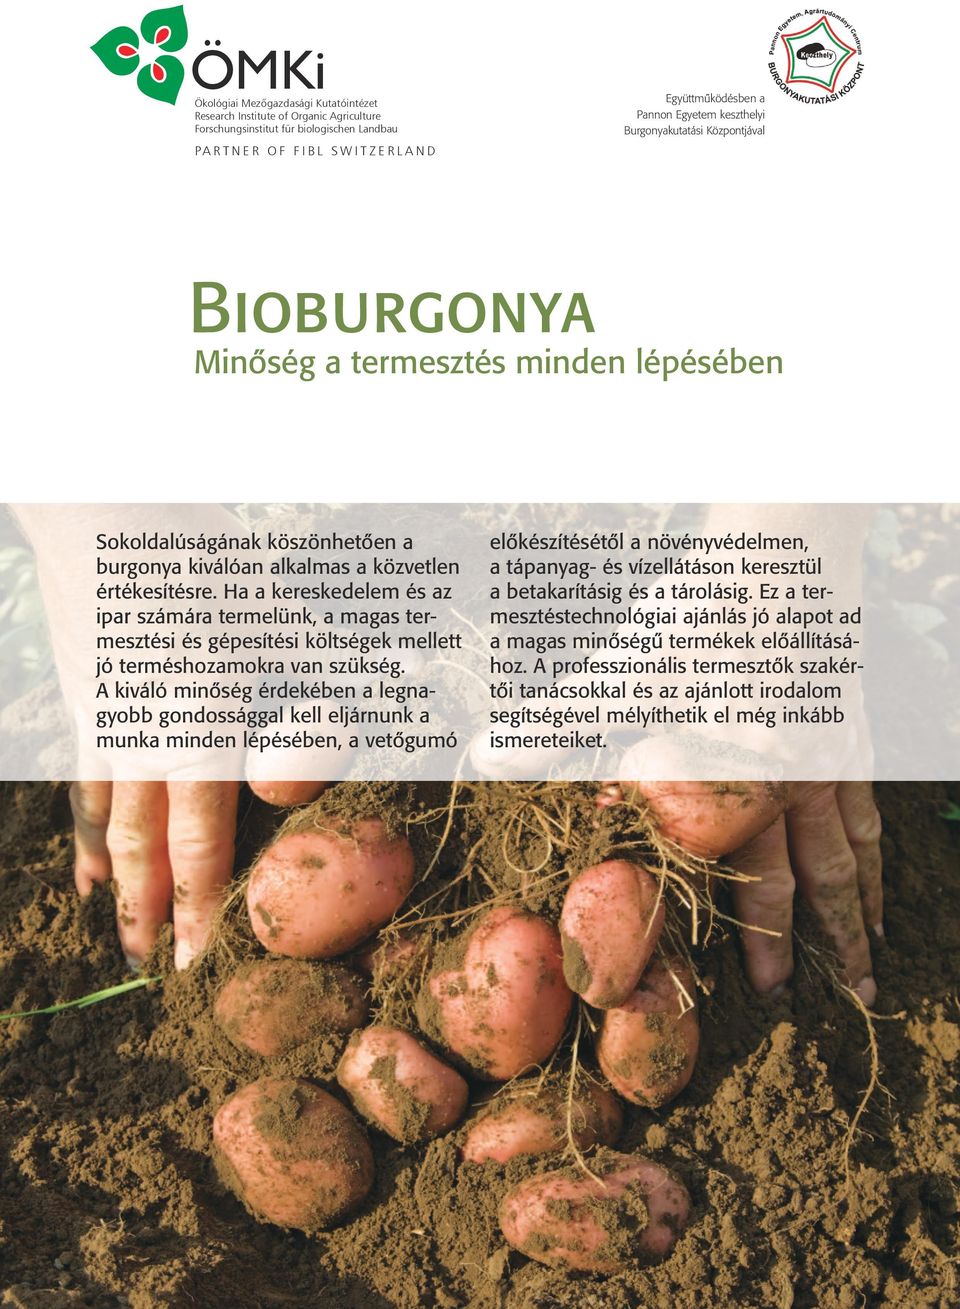 SWITZERLAND Minőség a termesztés minden lépésében Sokoldalúságának köszönhetően a burgonya kiválóan alkalmas a közvetlen értékesítésre.